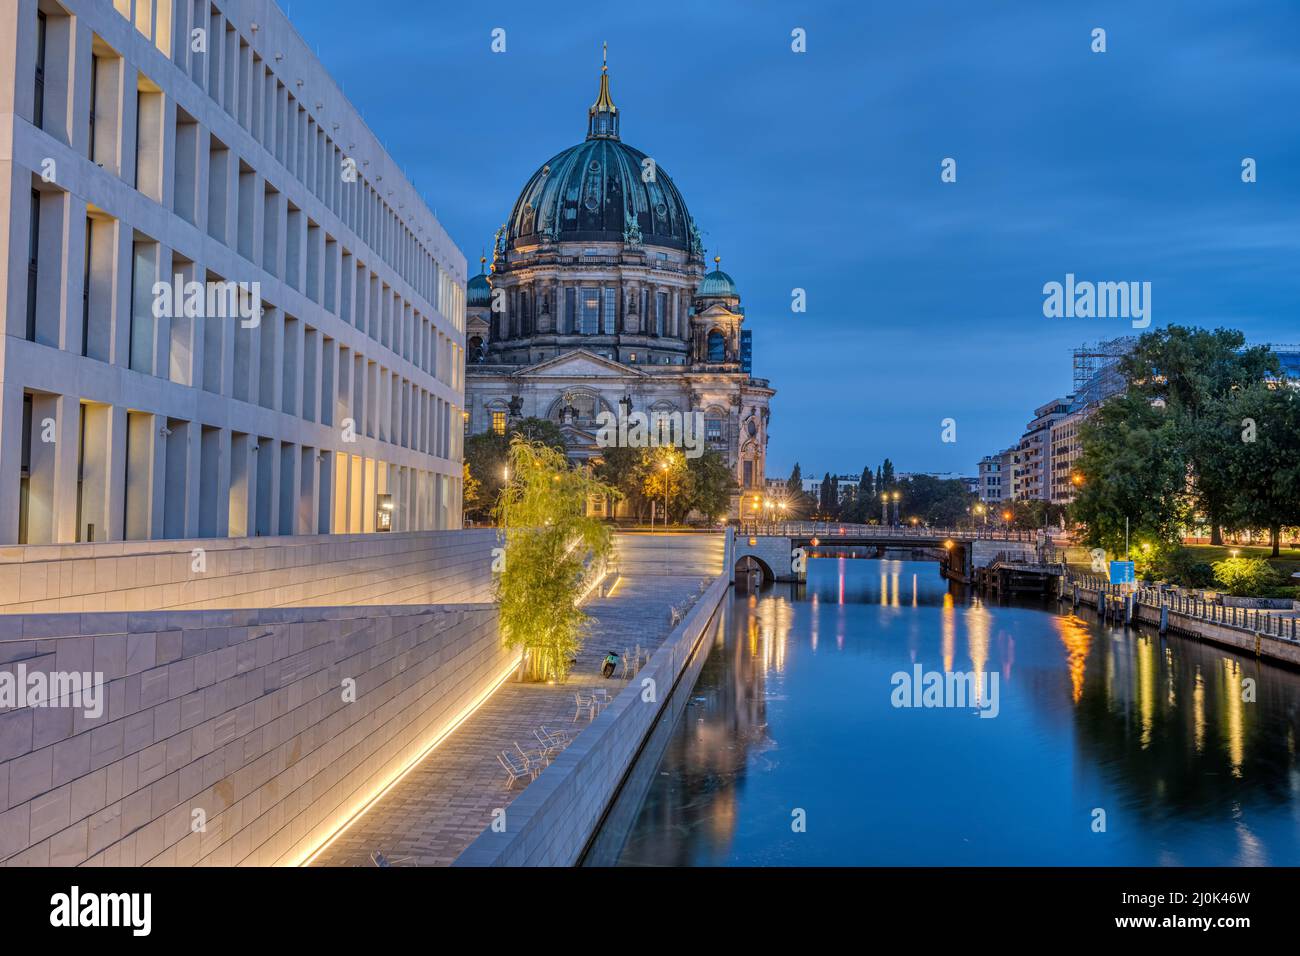 La moderna parte trasera del Palacio de la Ciudad, la catedral y el río Spree en Berlín al amanecer Foto de stock